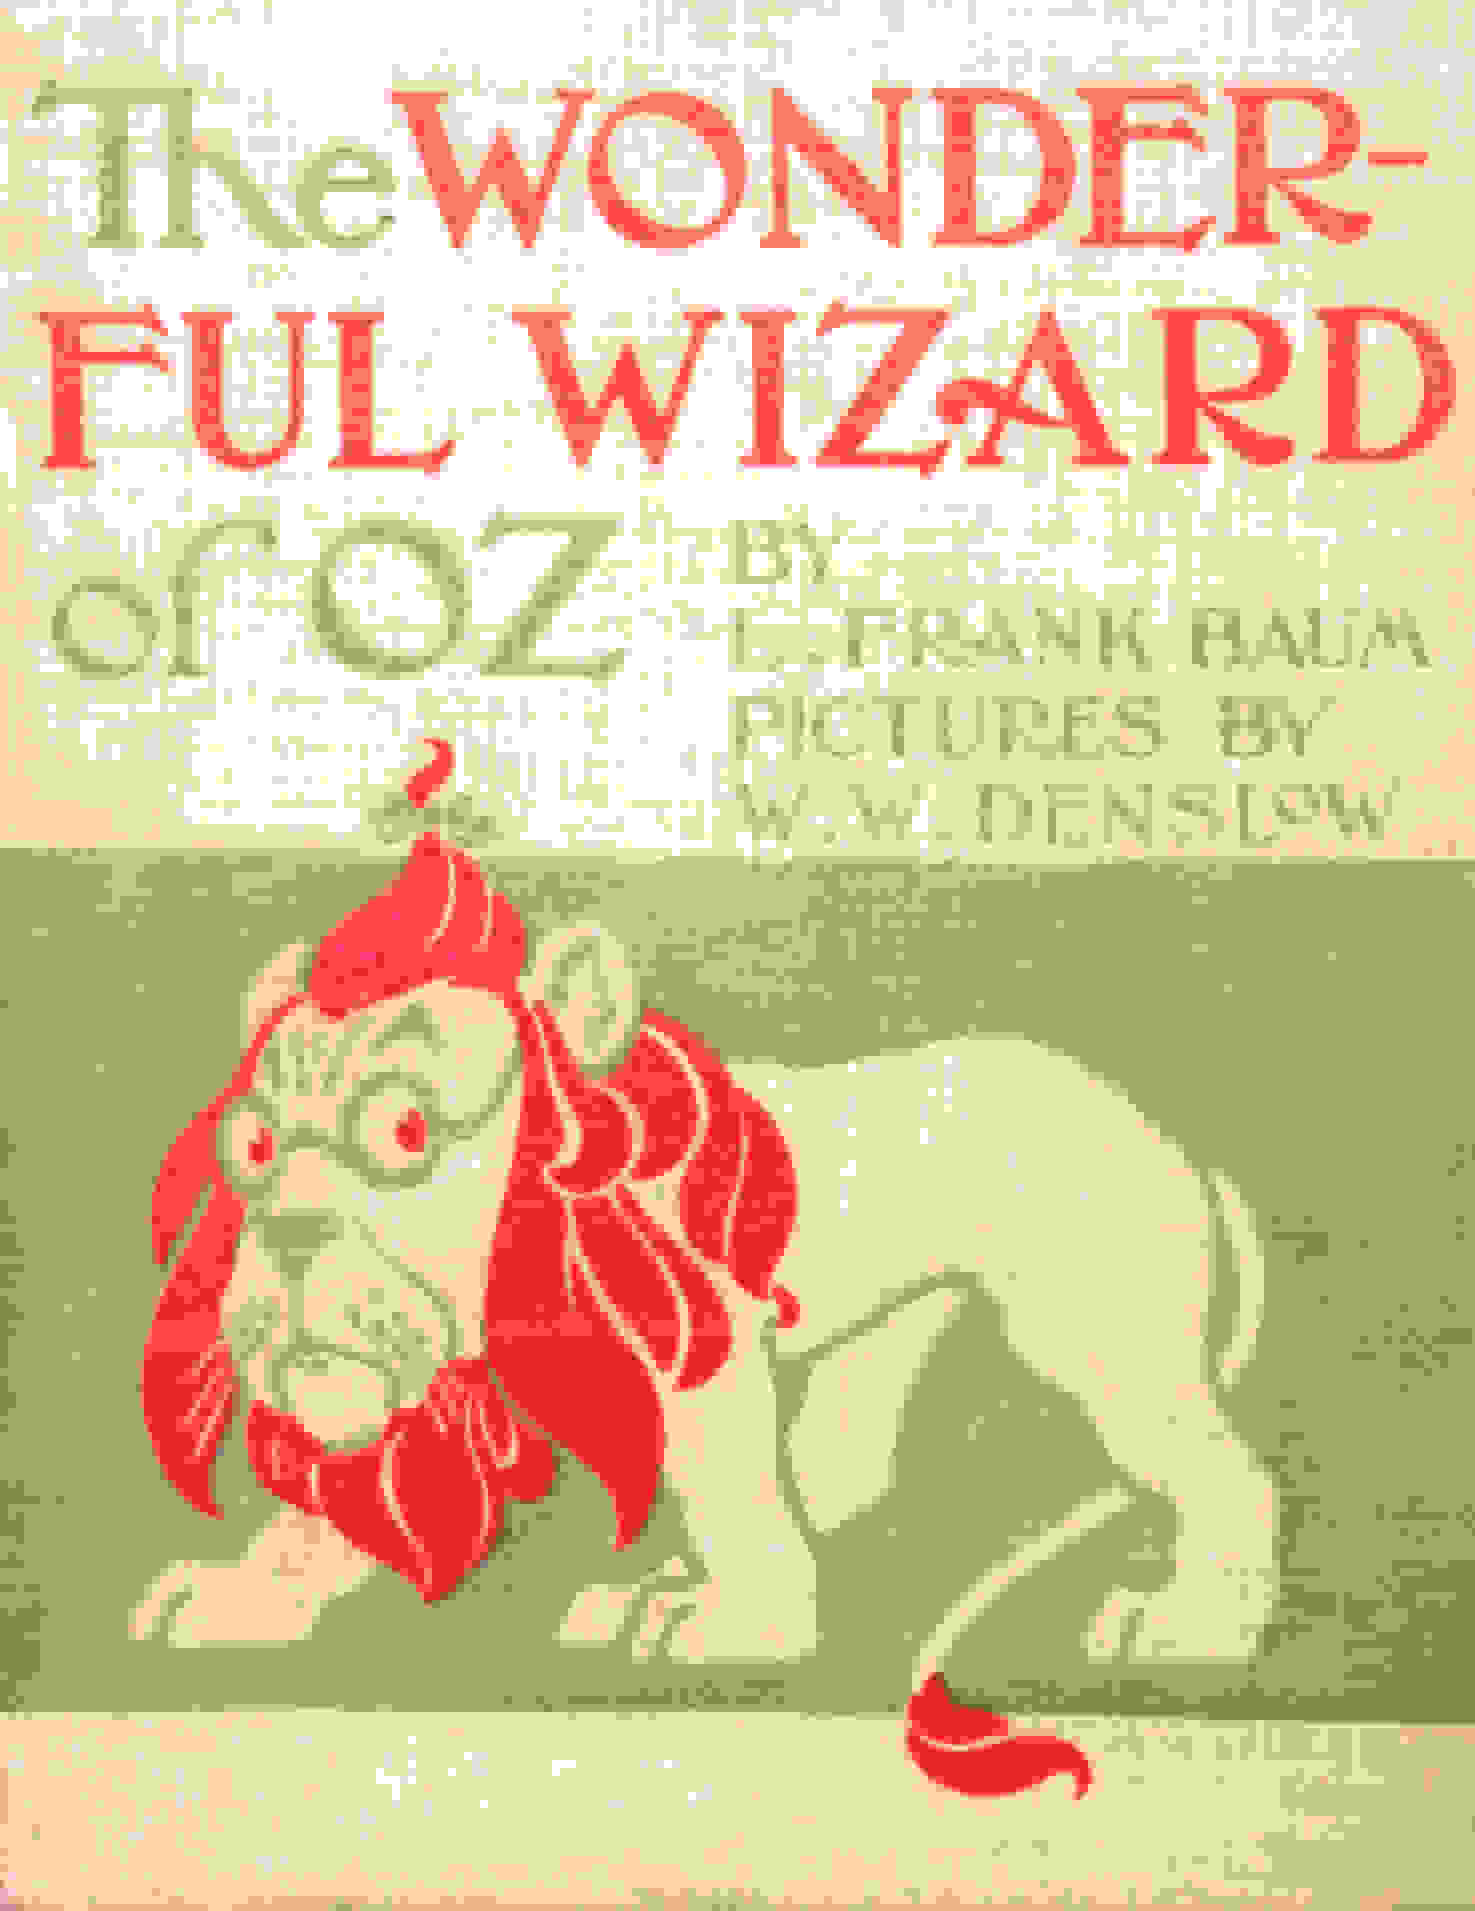 The Wonderful Wizard of Oz by L. Frank Baum and W.W. Denslow